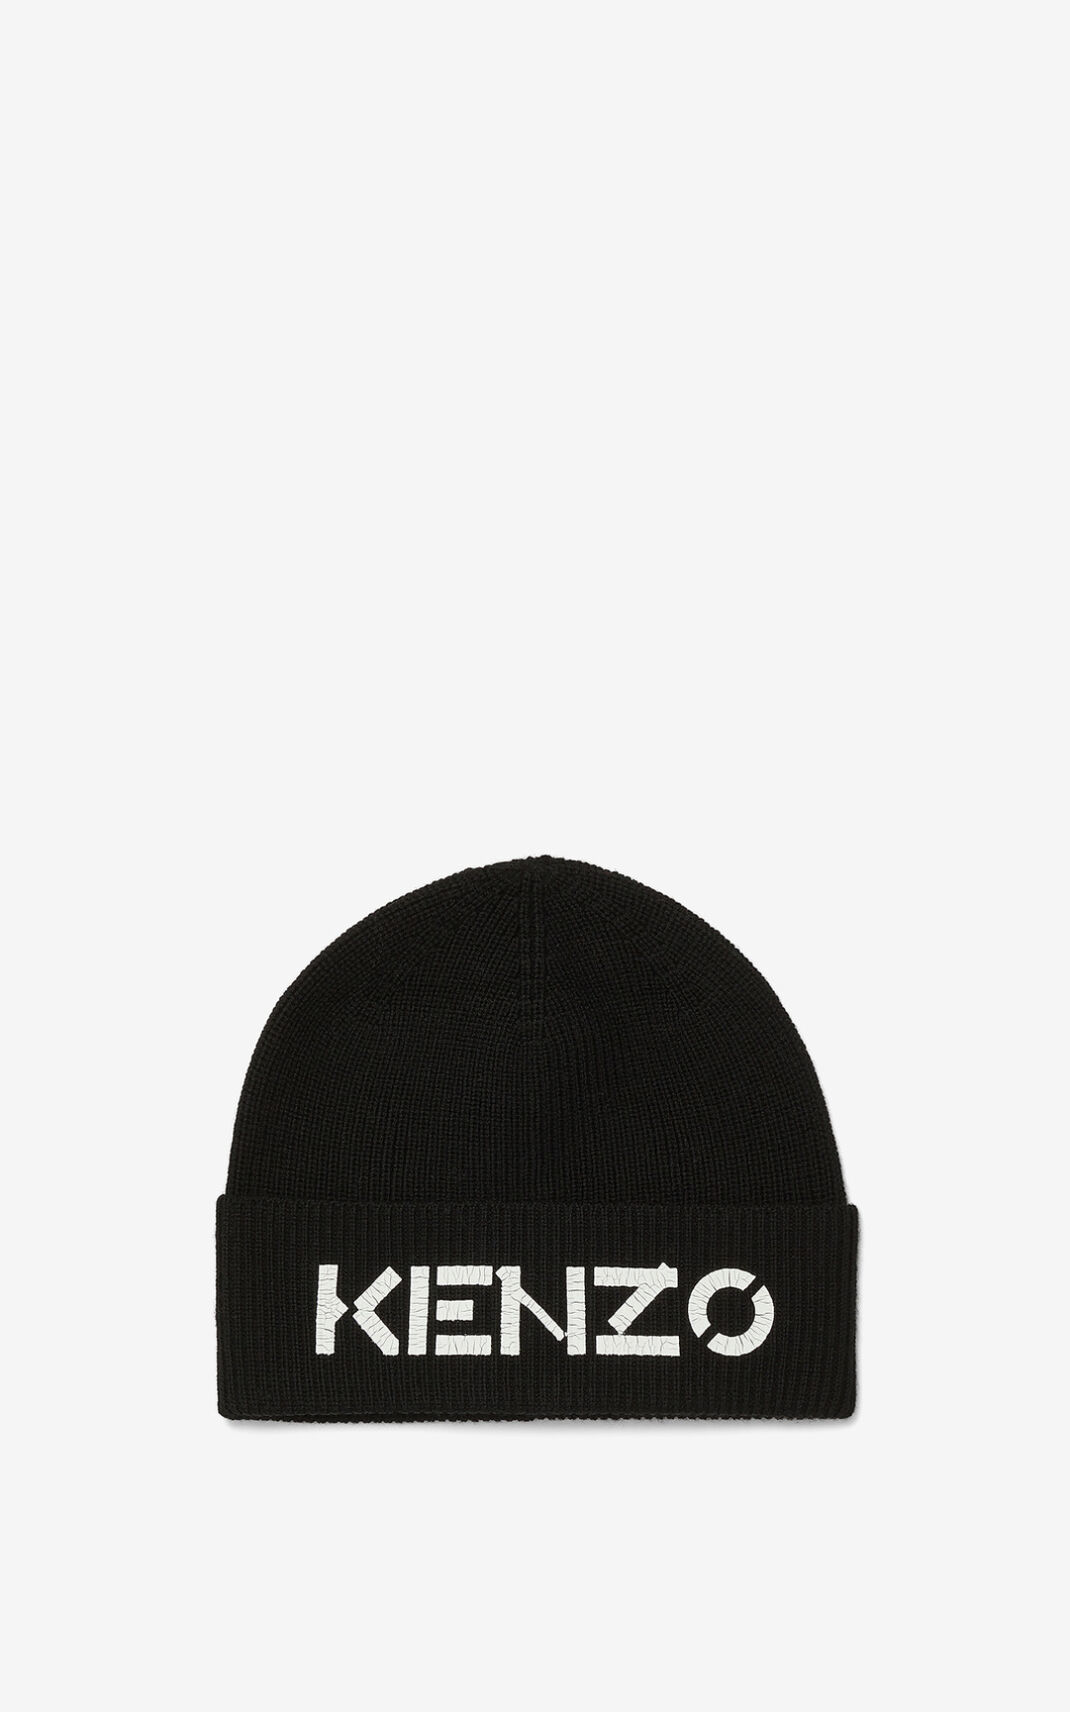 Gorro Kenzo Logo knit Mujer Negras - SKU.3145066